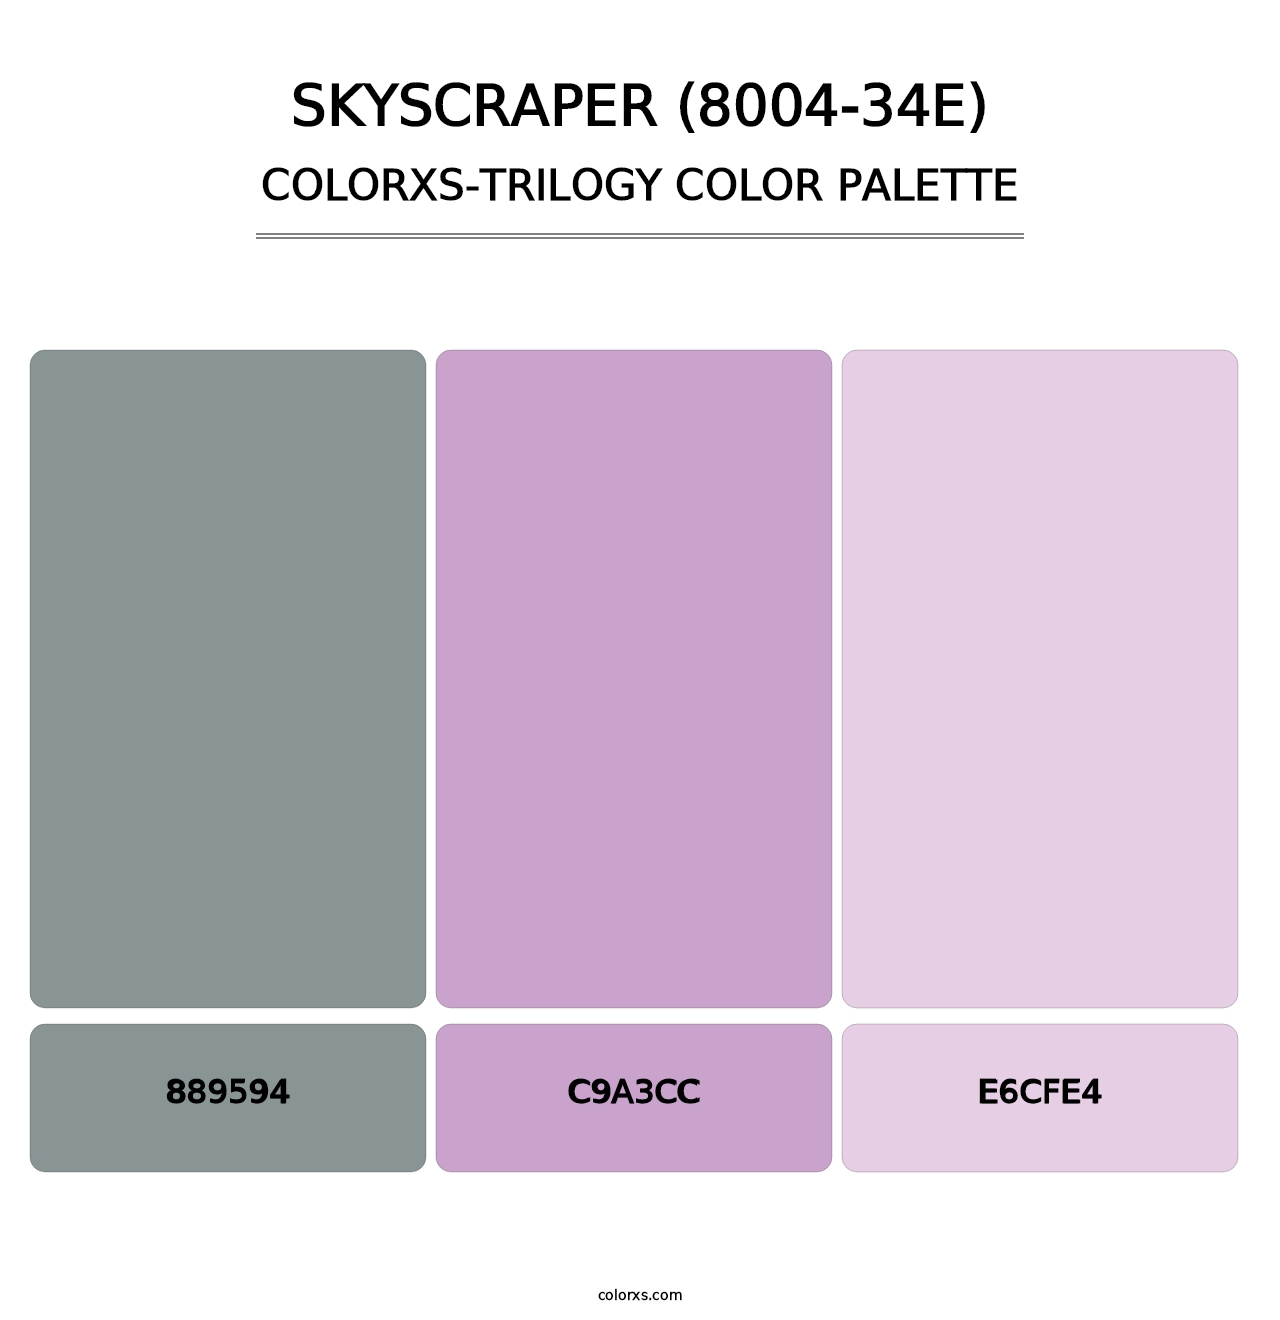 Skyscraper (8004-34E) - Colorxs Trilogy Palette